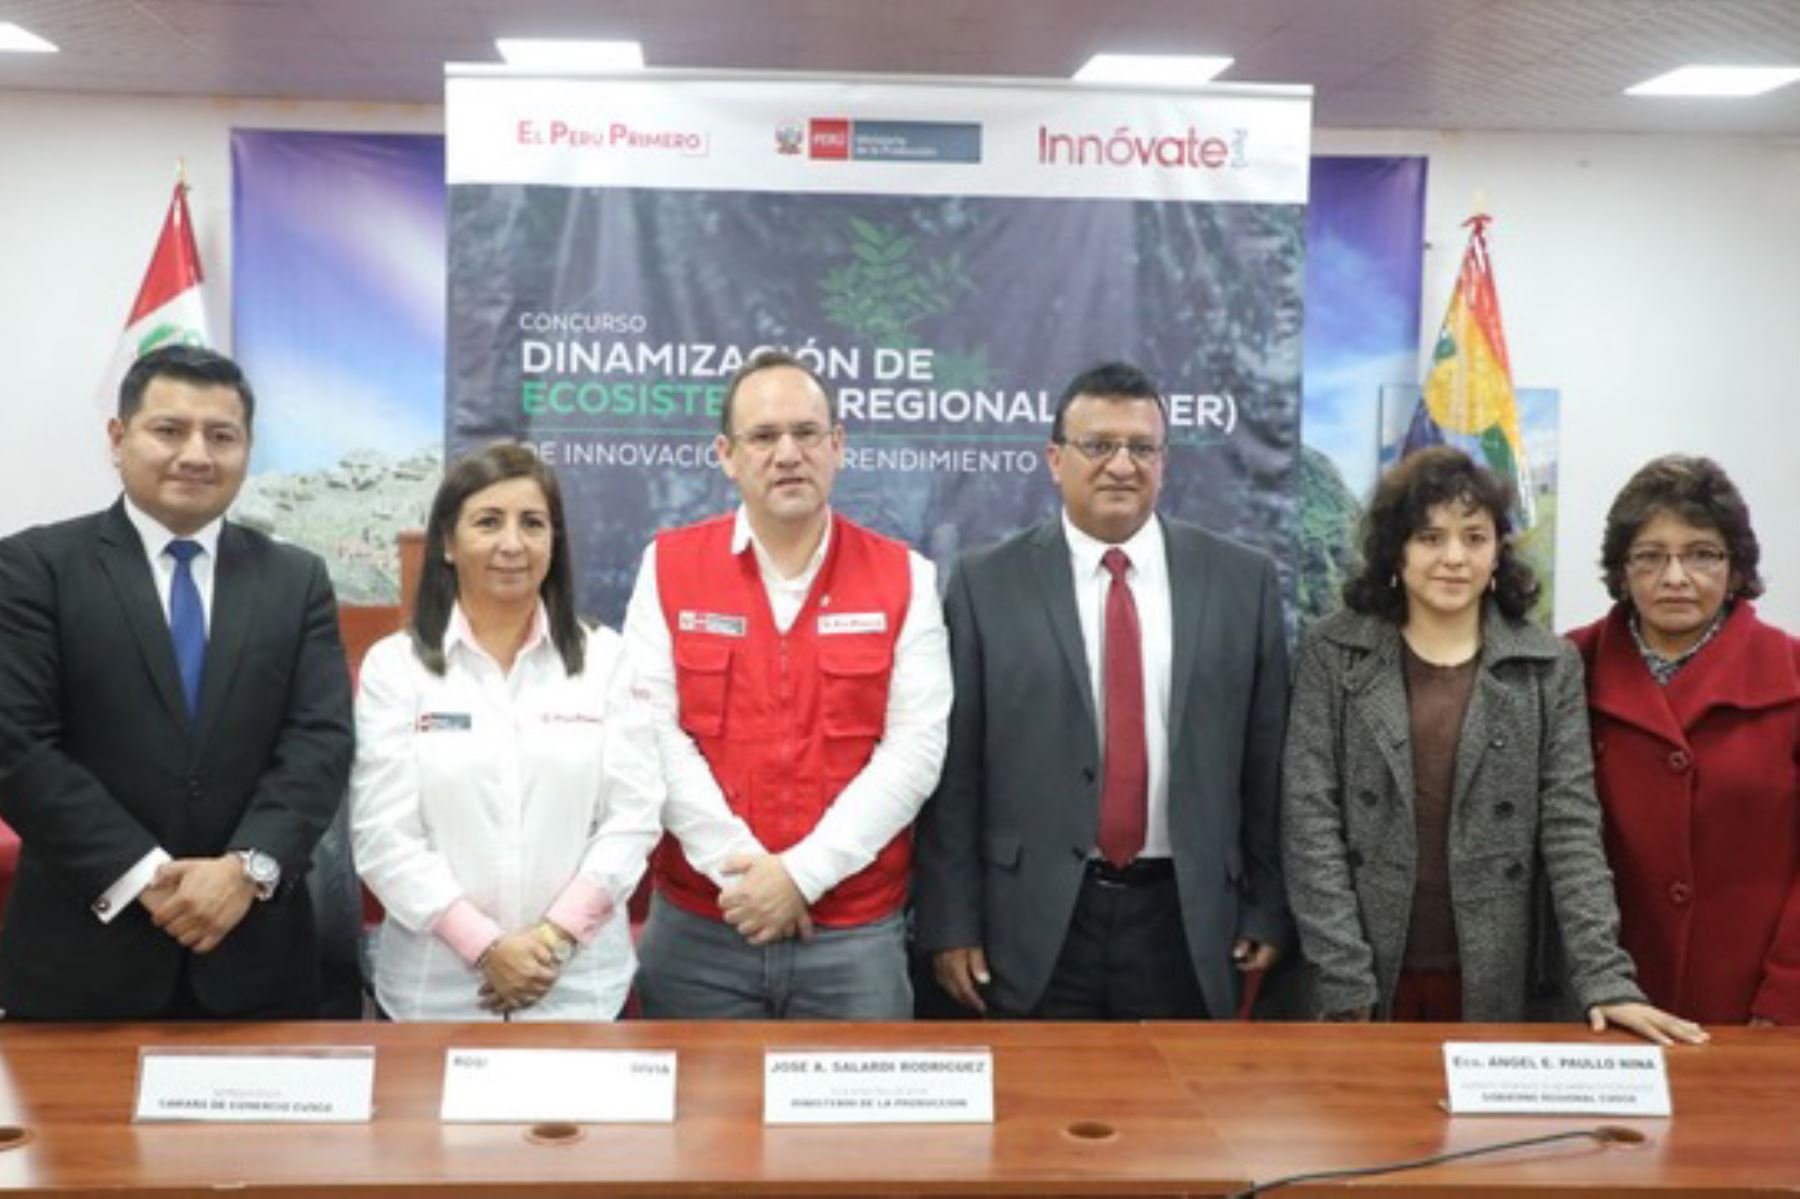 El viceministro de Mype e Industria, José Salardi, participó en el Cusco en el lanzamiento de la segunda convocatoria del Concurso de Proyectos de Dinamización de Ecosistemas Regionales de Innovación y Emprendimiento.